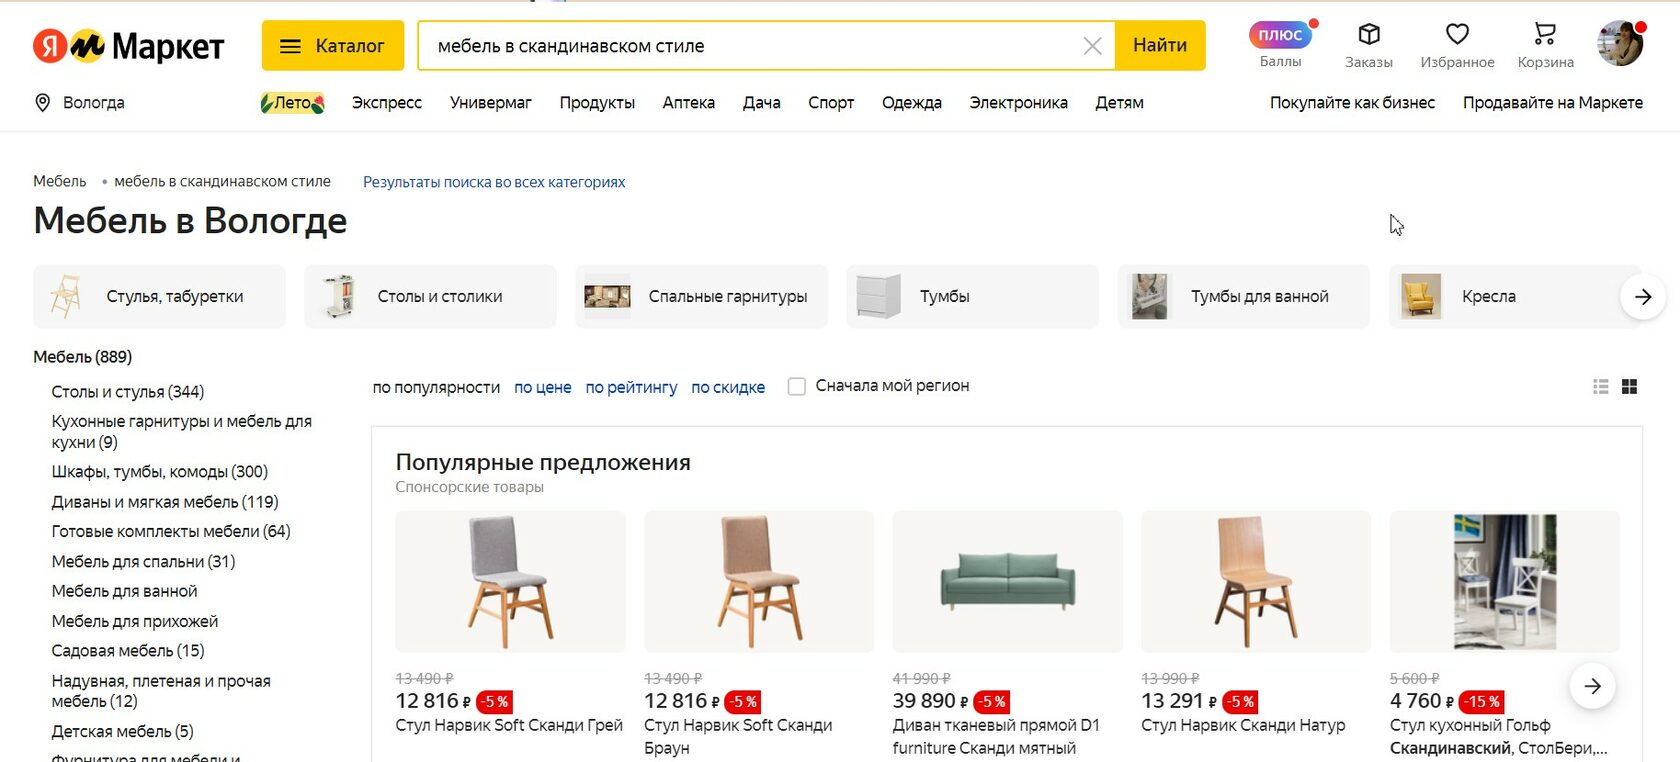 Варианты по запросу «мебель в скандинавском стиле» Яндекс.Маркет